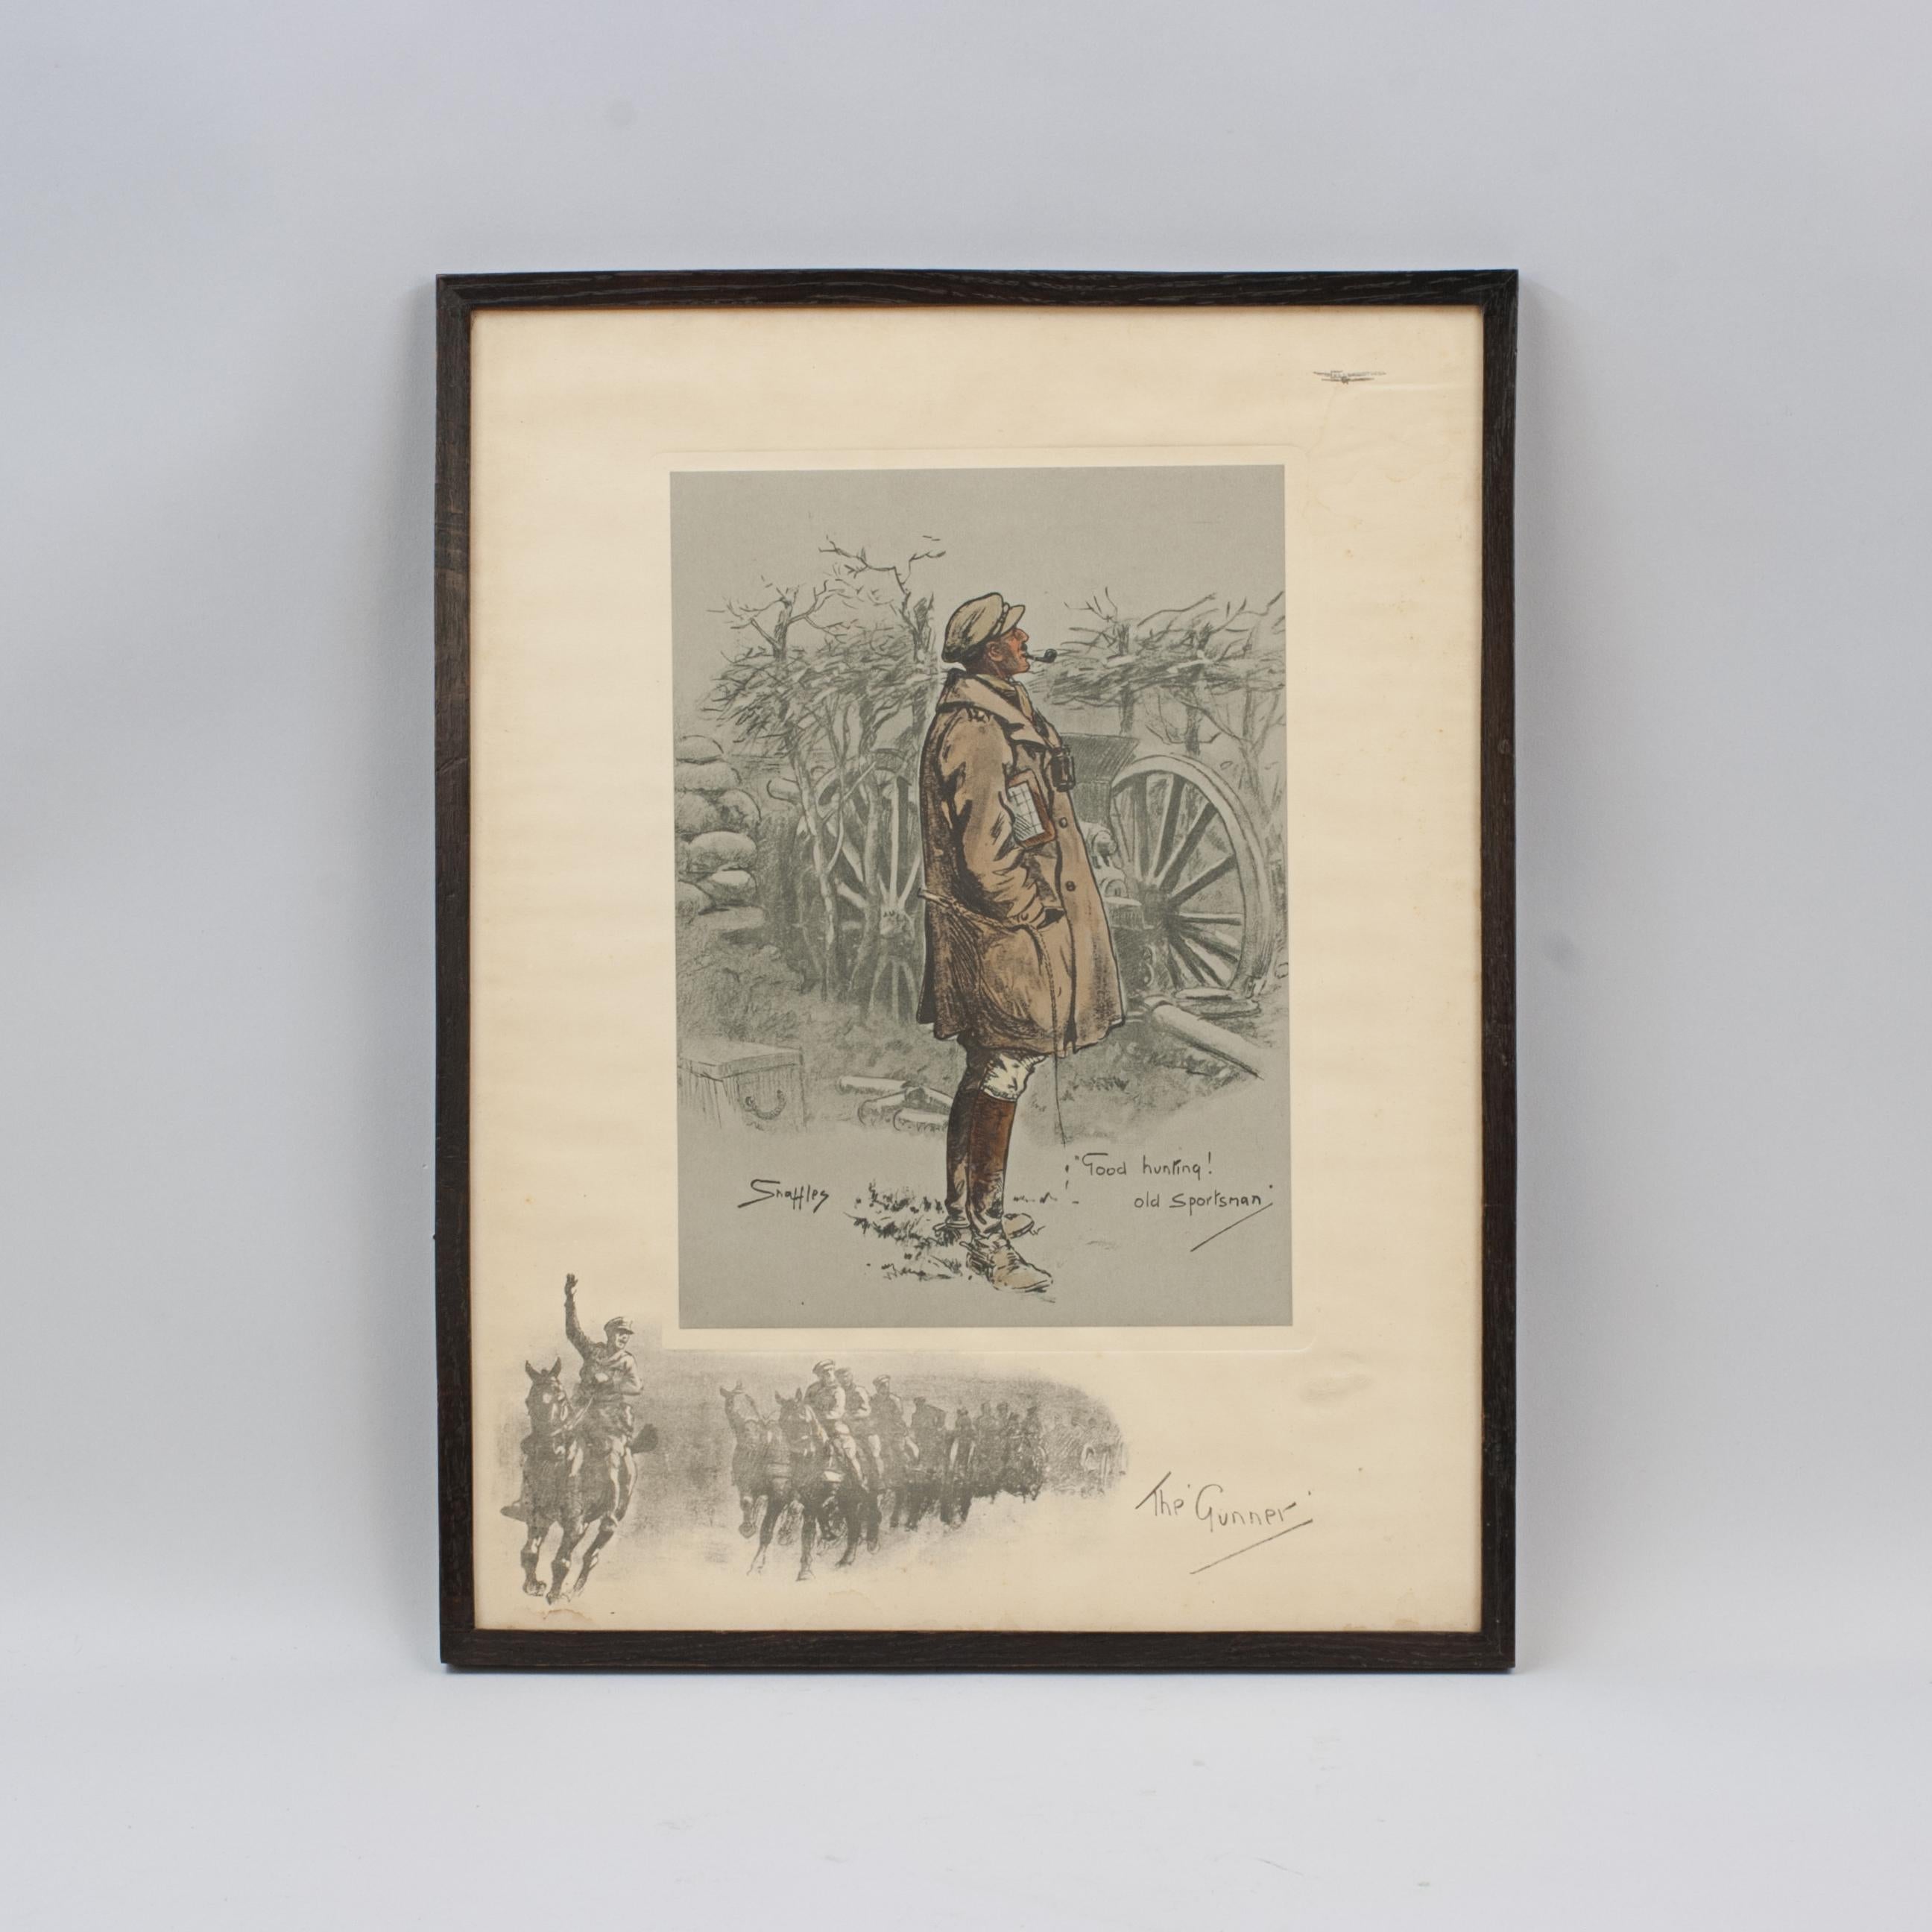 Gravure militaire de la Première Guerre mondiale de Snaffles, L'artilleur.
Une bonne lithographie militaire de la Première Guerre mondiale intitulée 